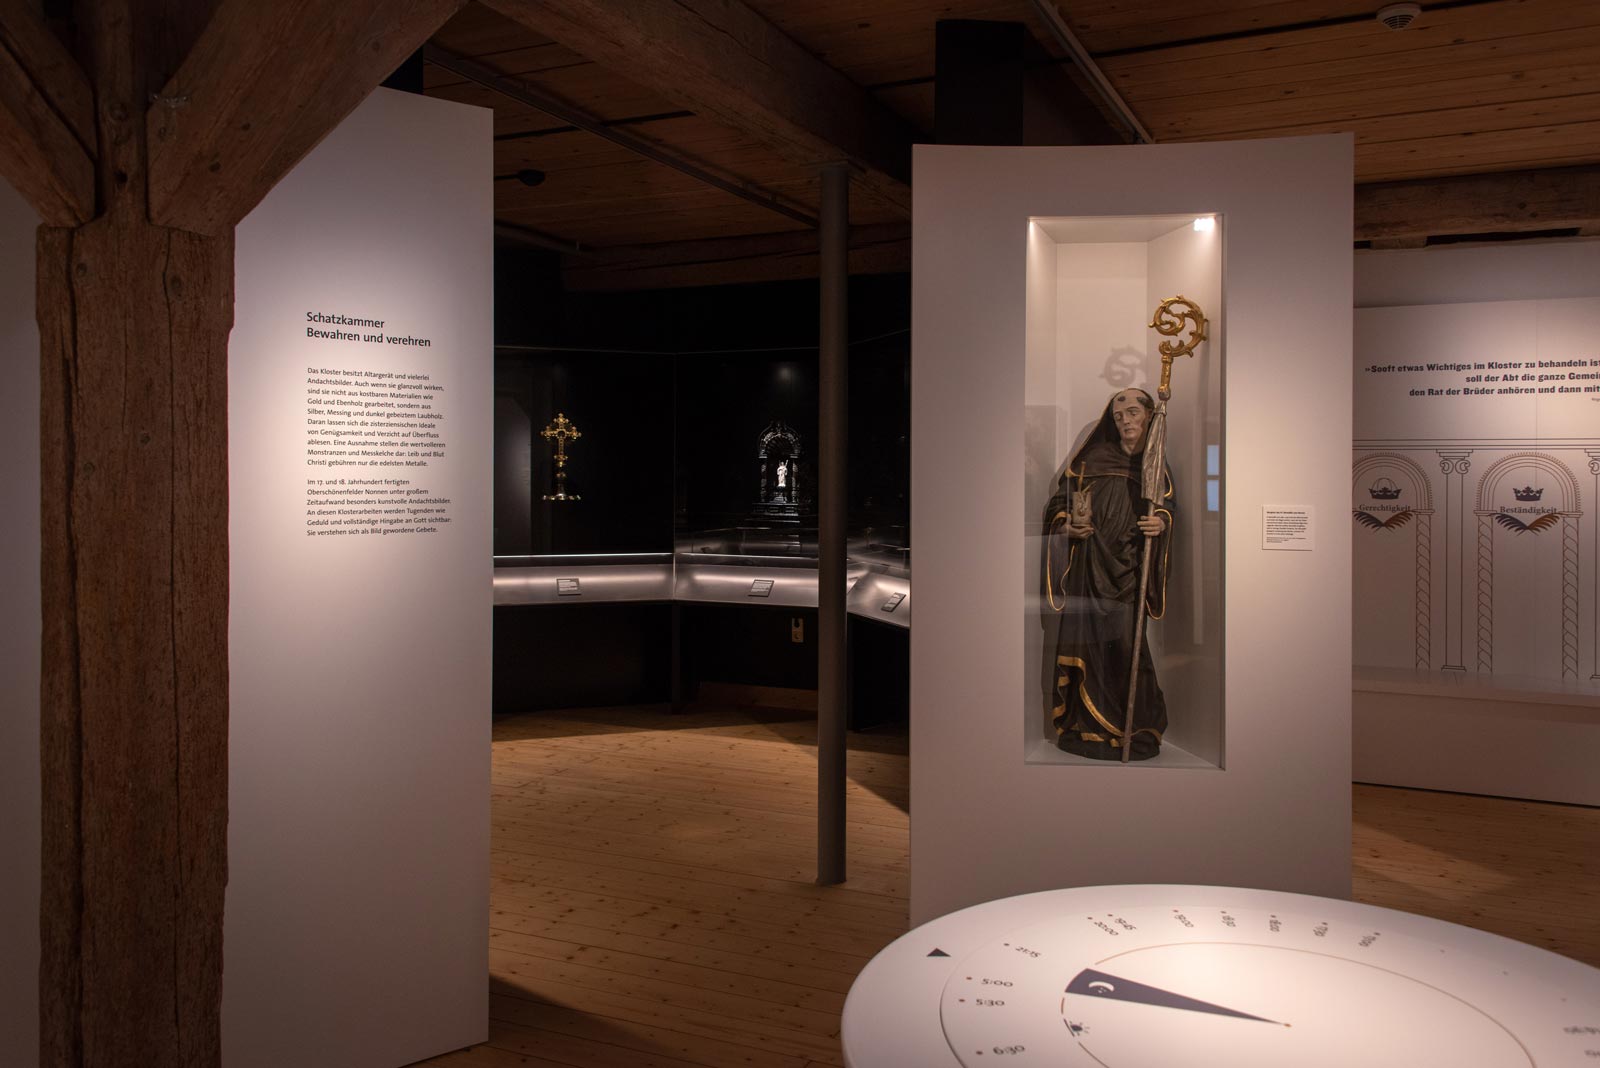 Das Referenzbild für Ausstellungsgestaltung aus der Dauerausstellung Tradition und Umbruch zeigt eine Exponat-Präsentation mit Einbauvitrine und Tischvitrinen.